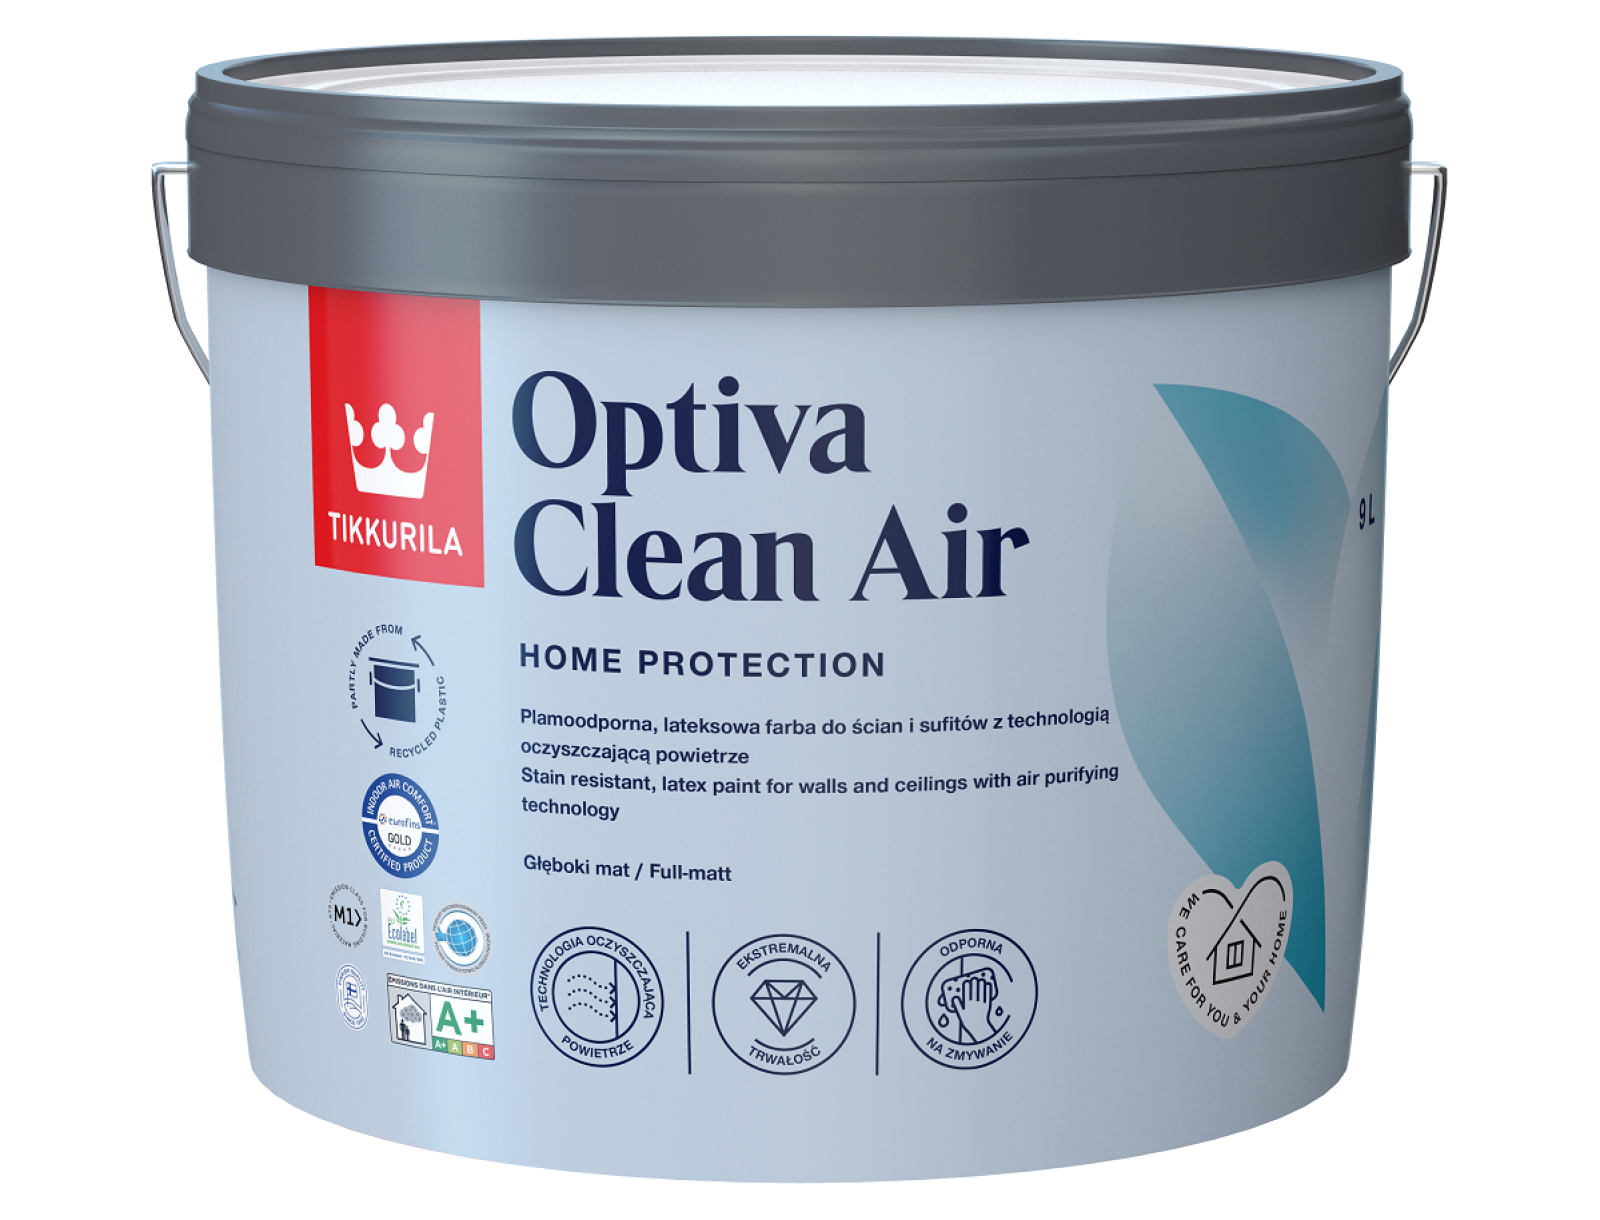 Tikkurila Optiva Clean Air - lateksowa, plamoodporna farba do ścian i sufitów z technologia oczyszczającą powietrze